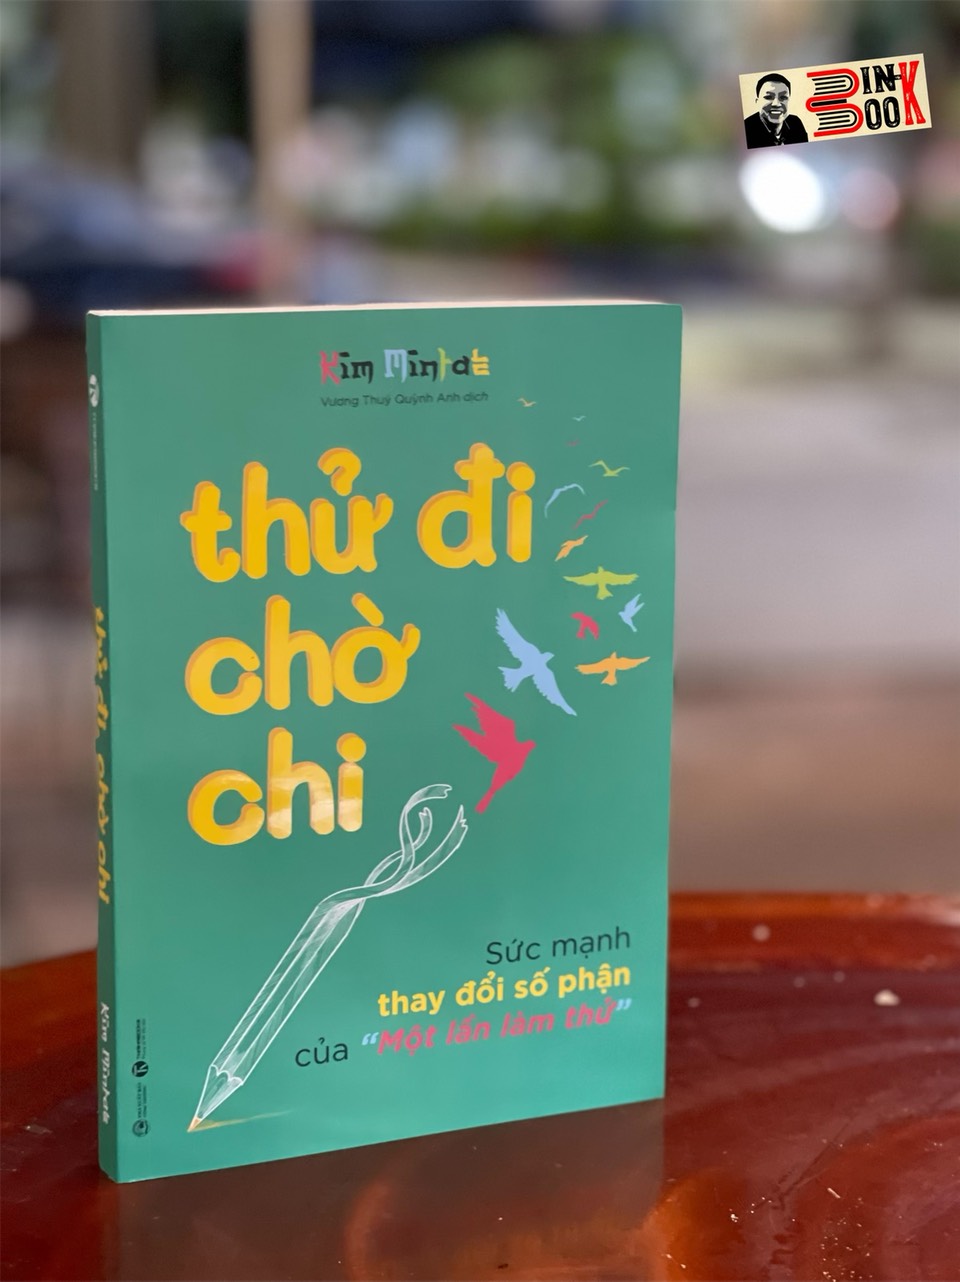 THỬ ĐI CHỜ CHI- Sức mạnh thay đổi số phận của “Một lần làm thử”– Kim Mintae - Vương Thuý Quỳnh Anh dịch- Thái Hà – NXB Công Thương